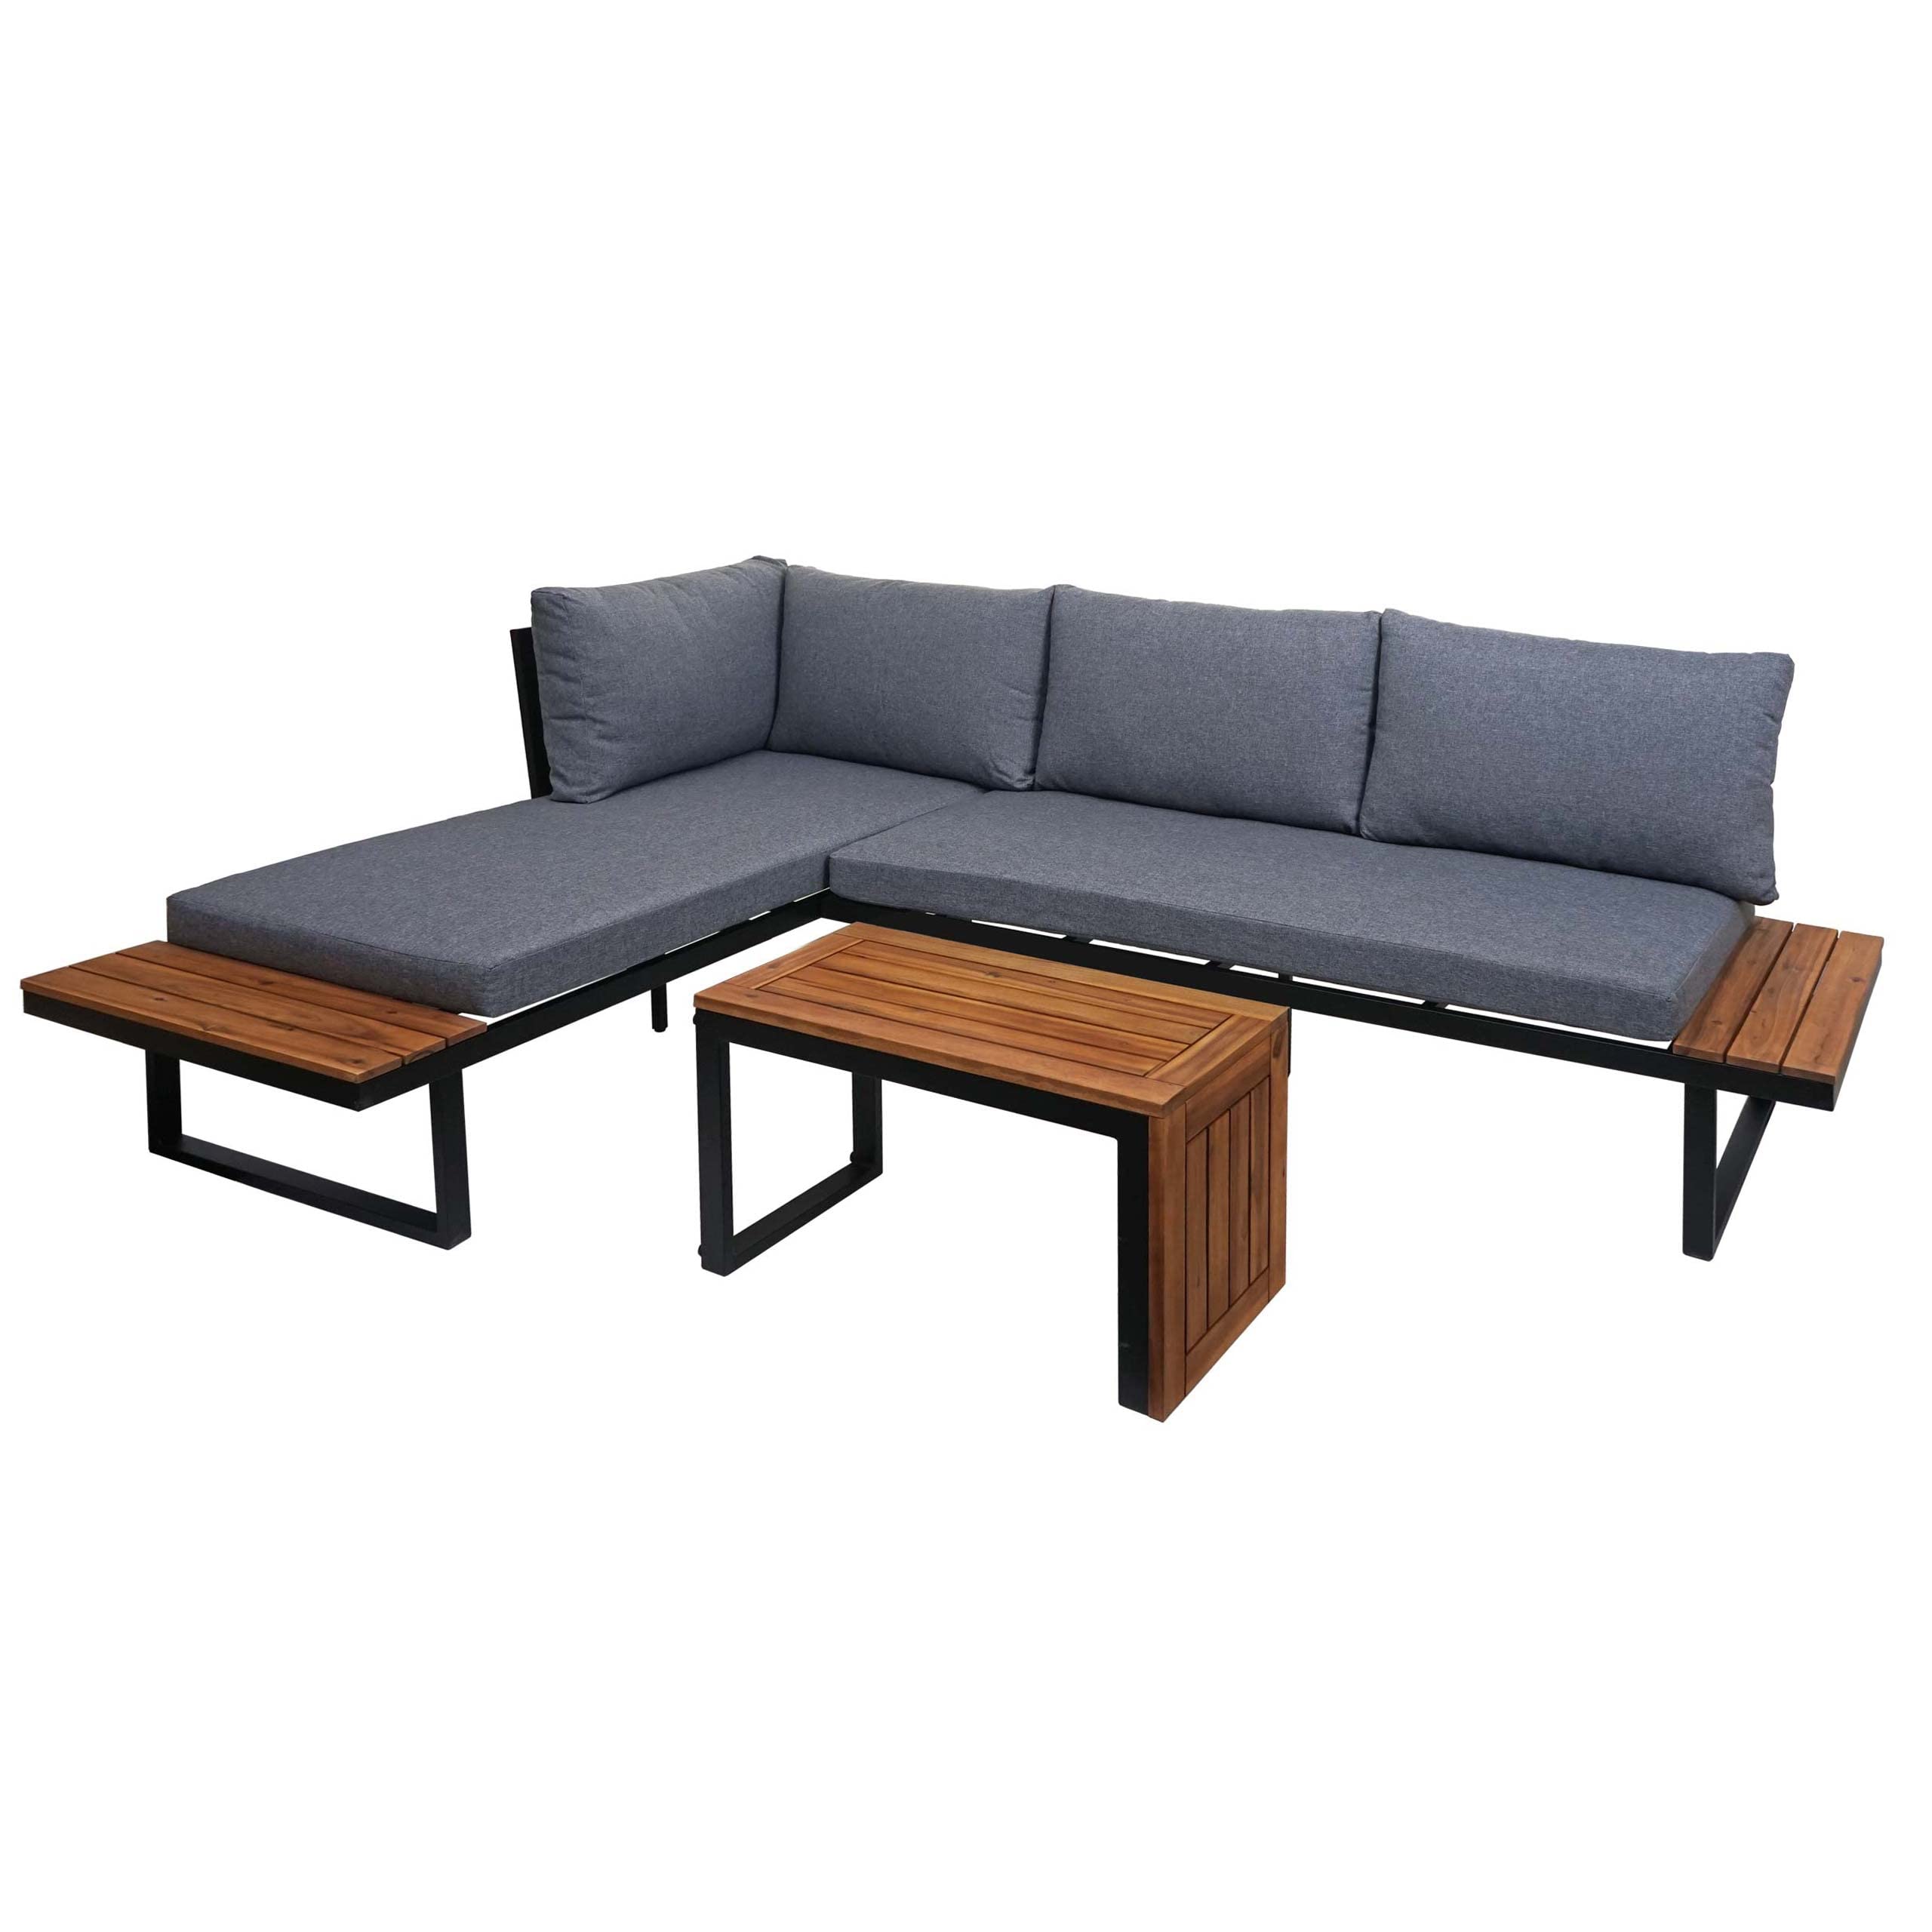 Mendler Garten Garnitur HWC-L27, Garnitur Sitzgruppe Lounge-Set Sofa, Spun Poly Alu Akazie Holz MVG-Zertifiziert - dunkelgrau